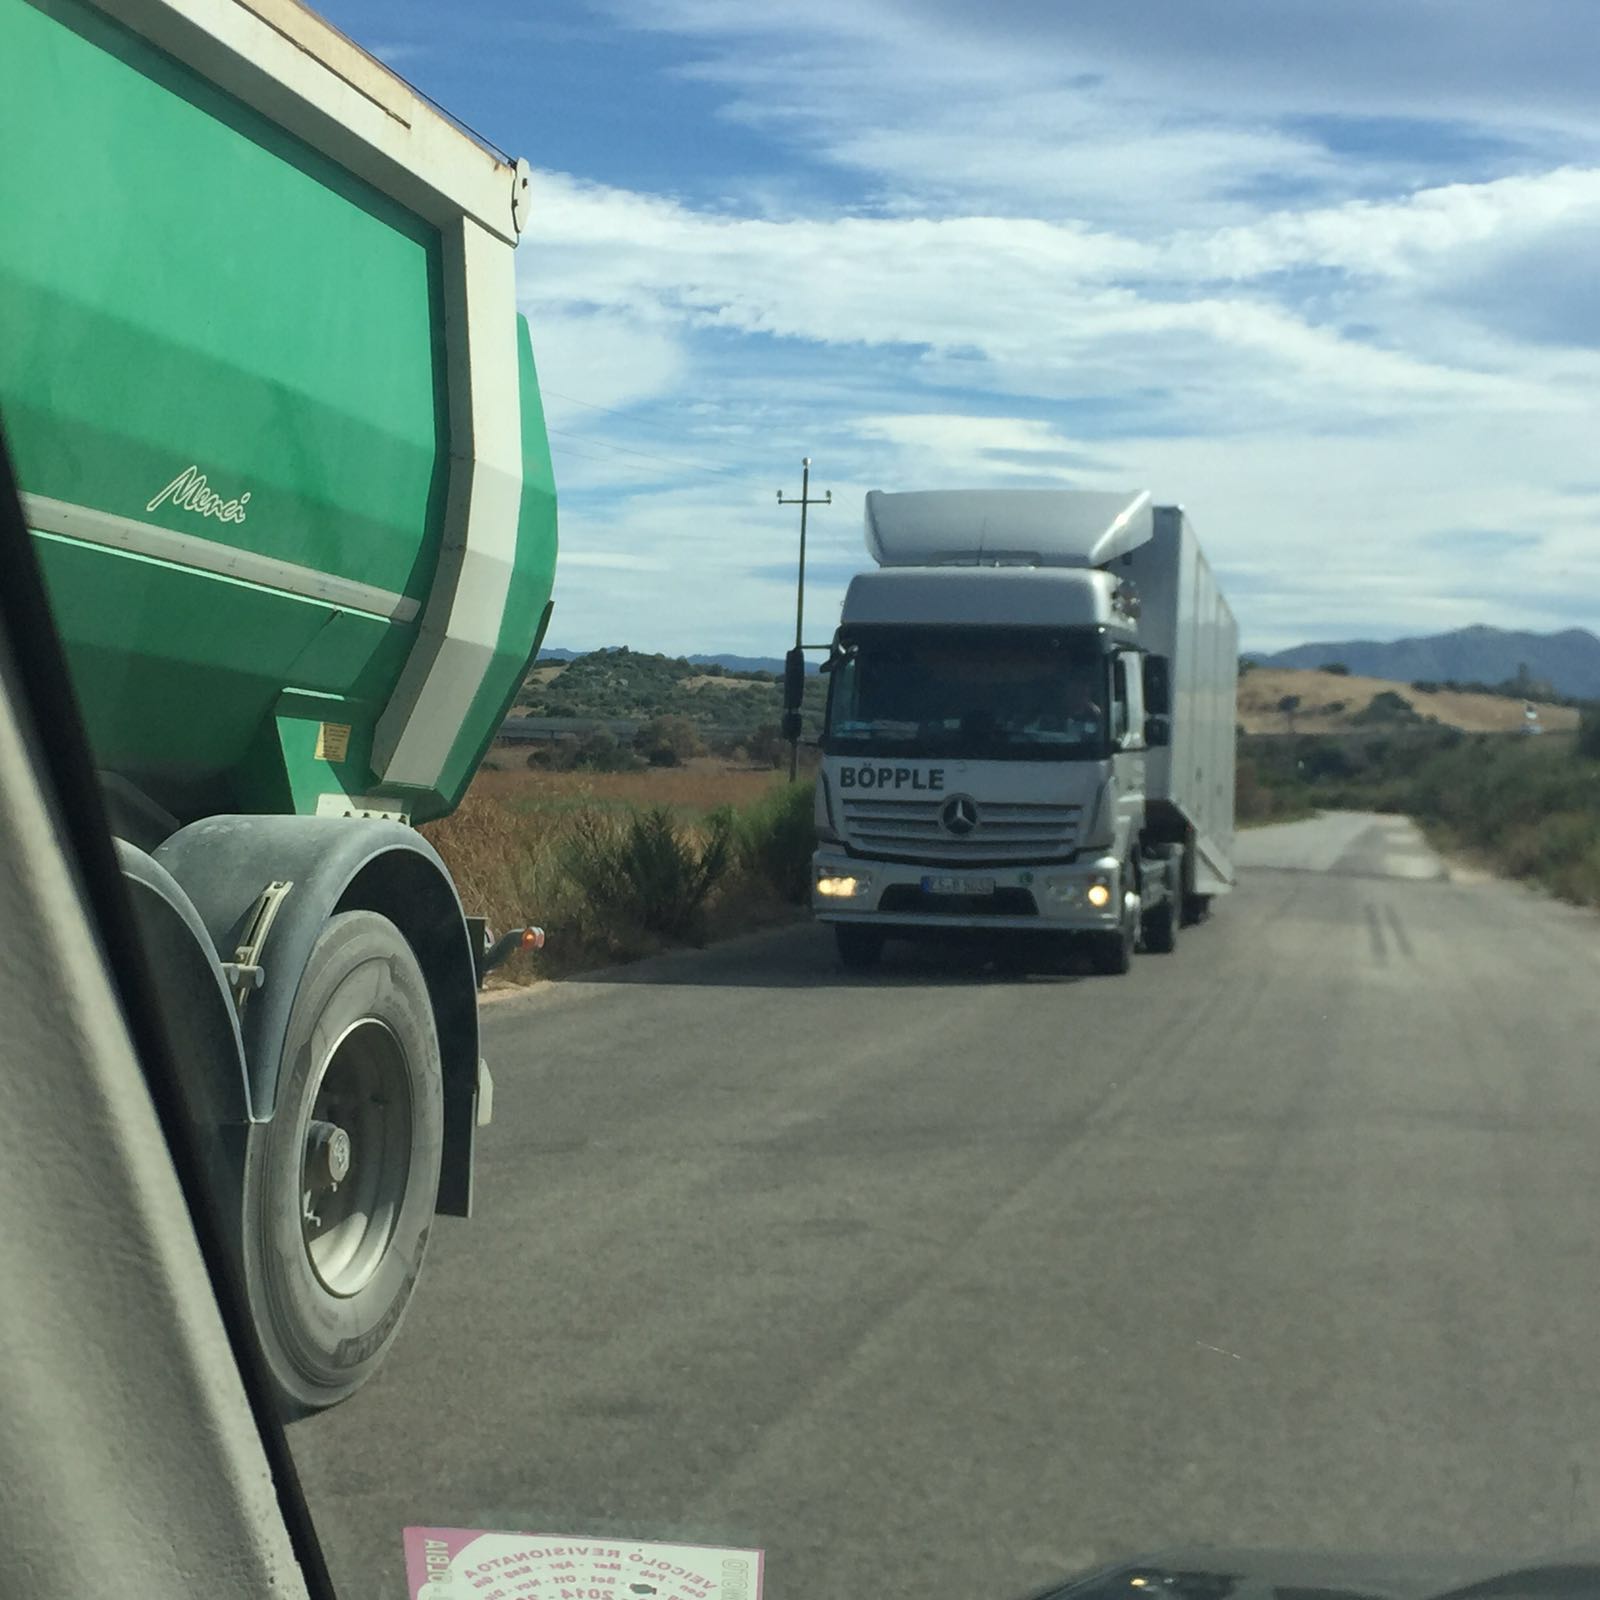 Sardegna, trasporti pubblici: fondamentale una mobilità efficiente